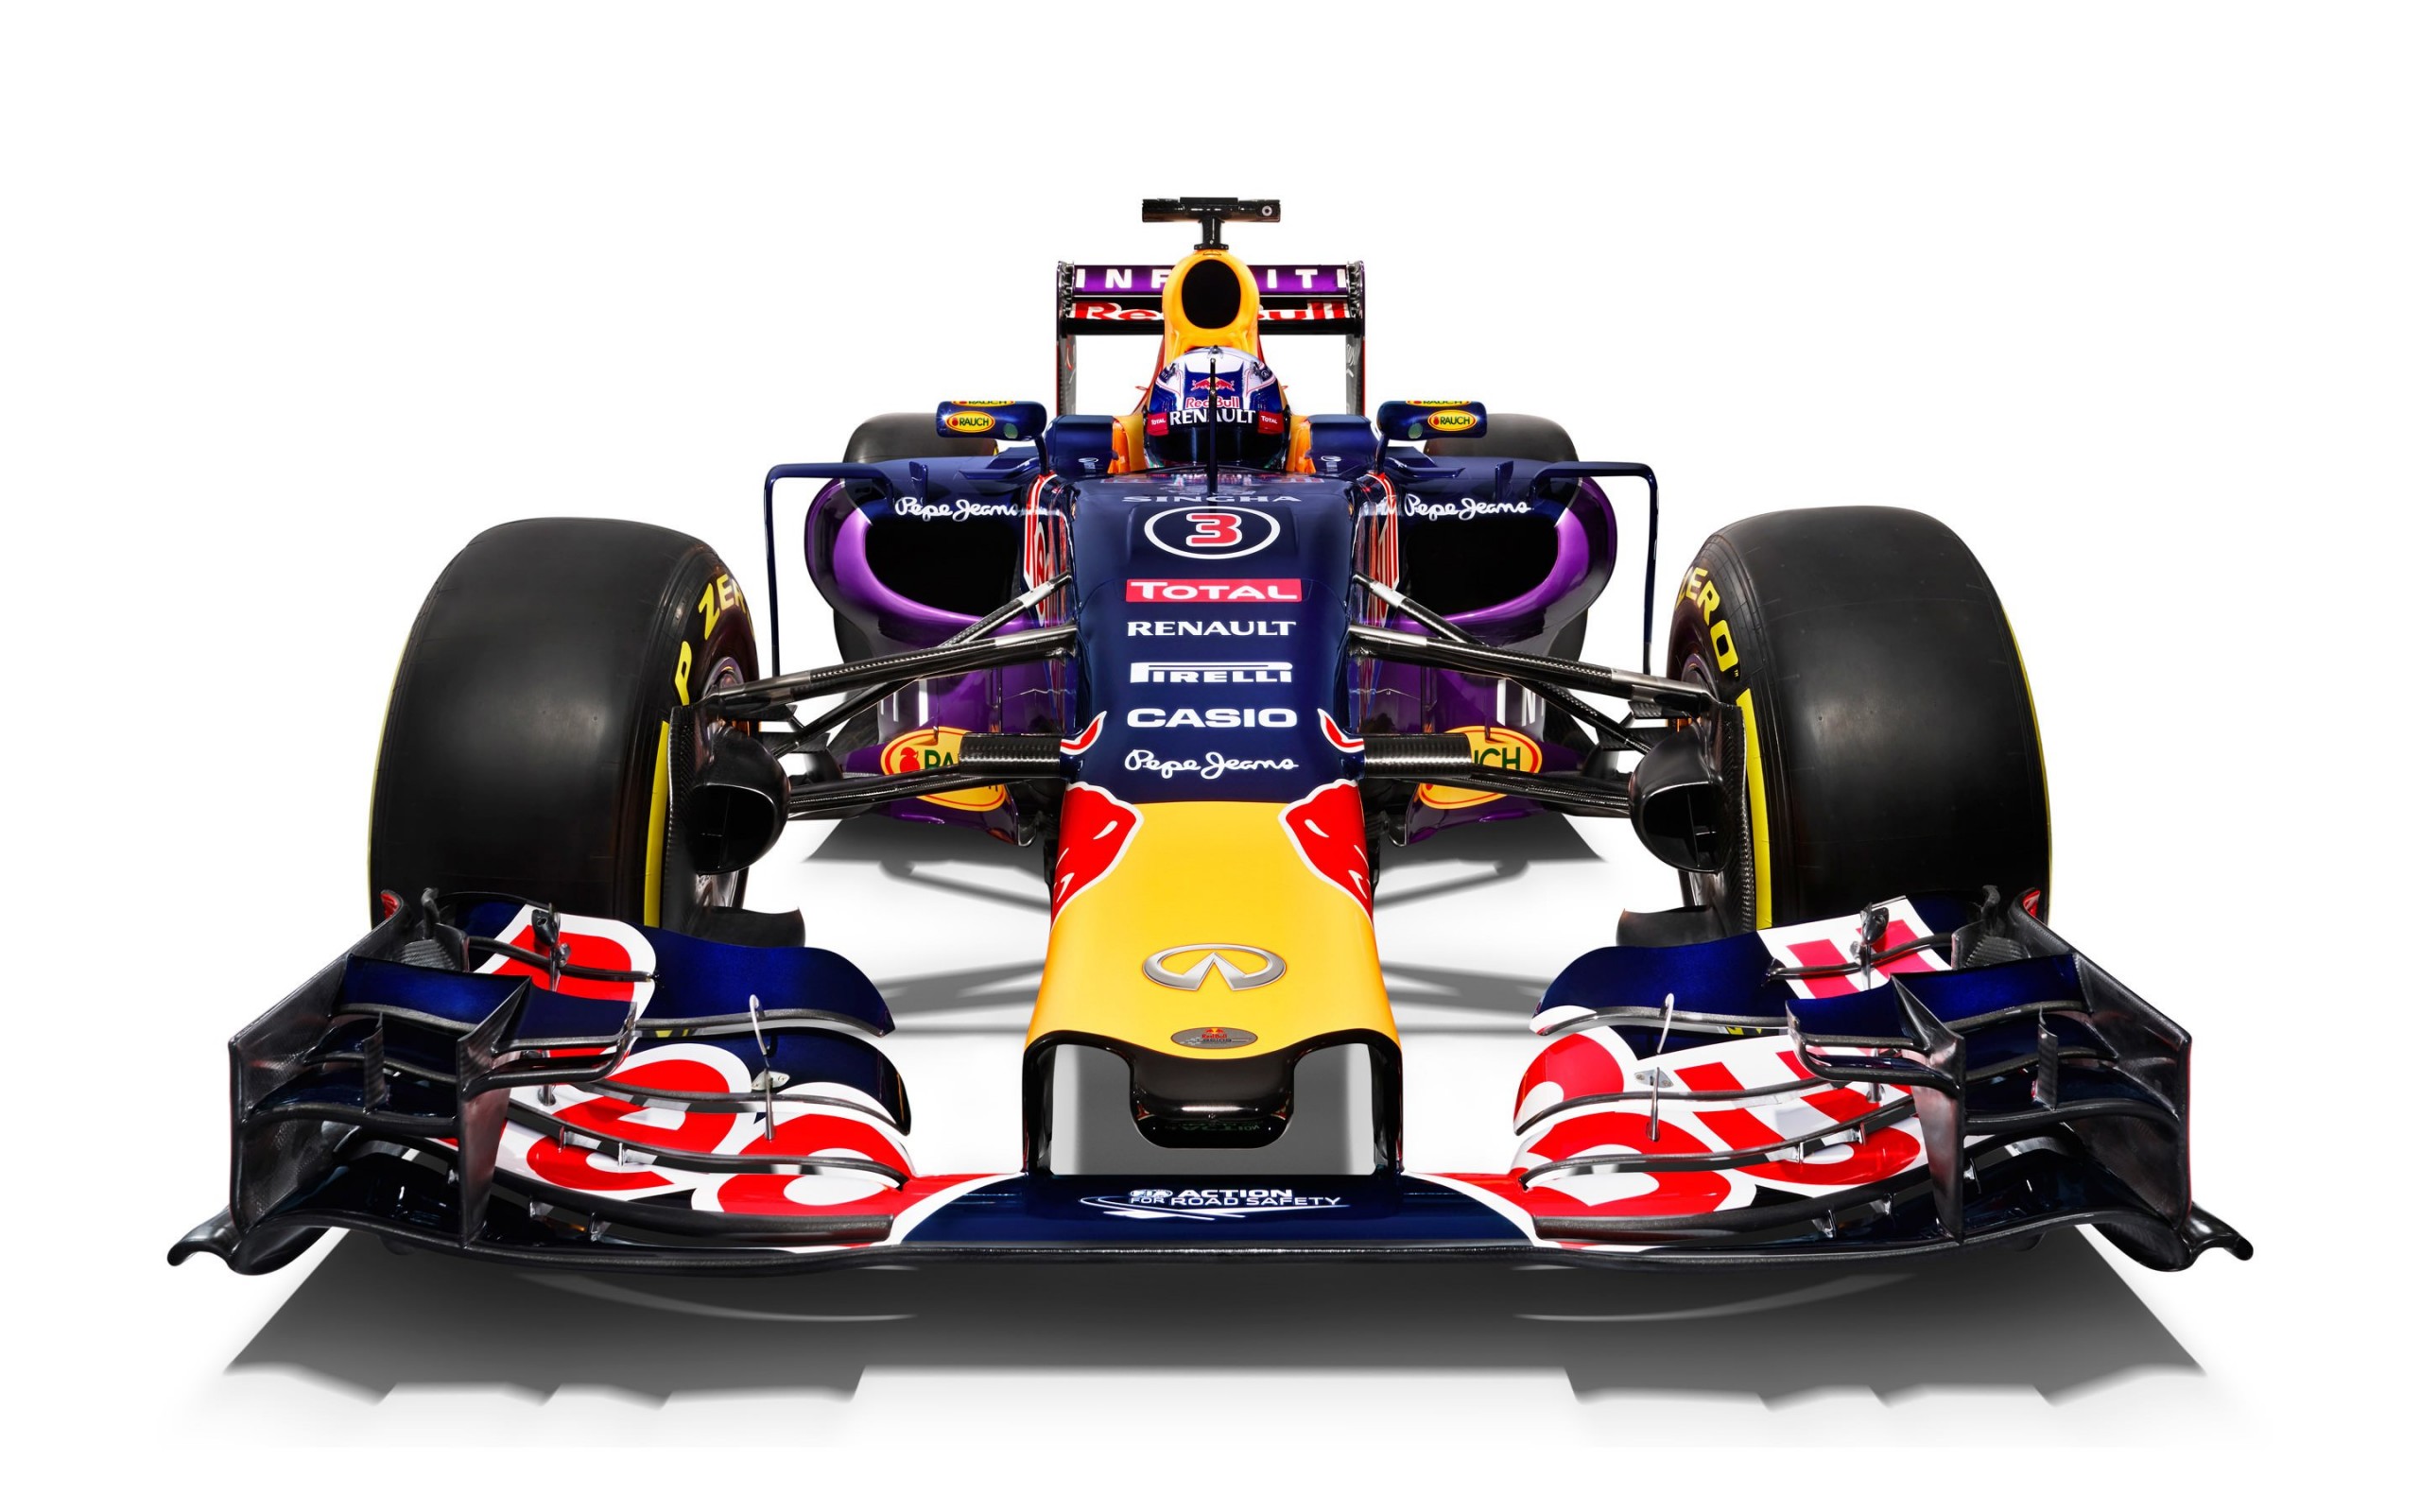 Infiniti Red Bull Racing RB11 2015 Formula 1 Car Wallpaper for Desktop 2560x1600